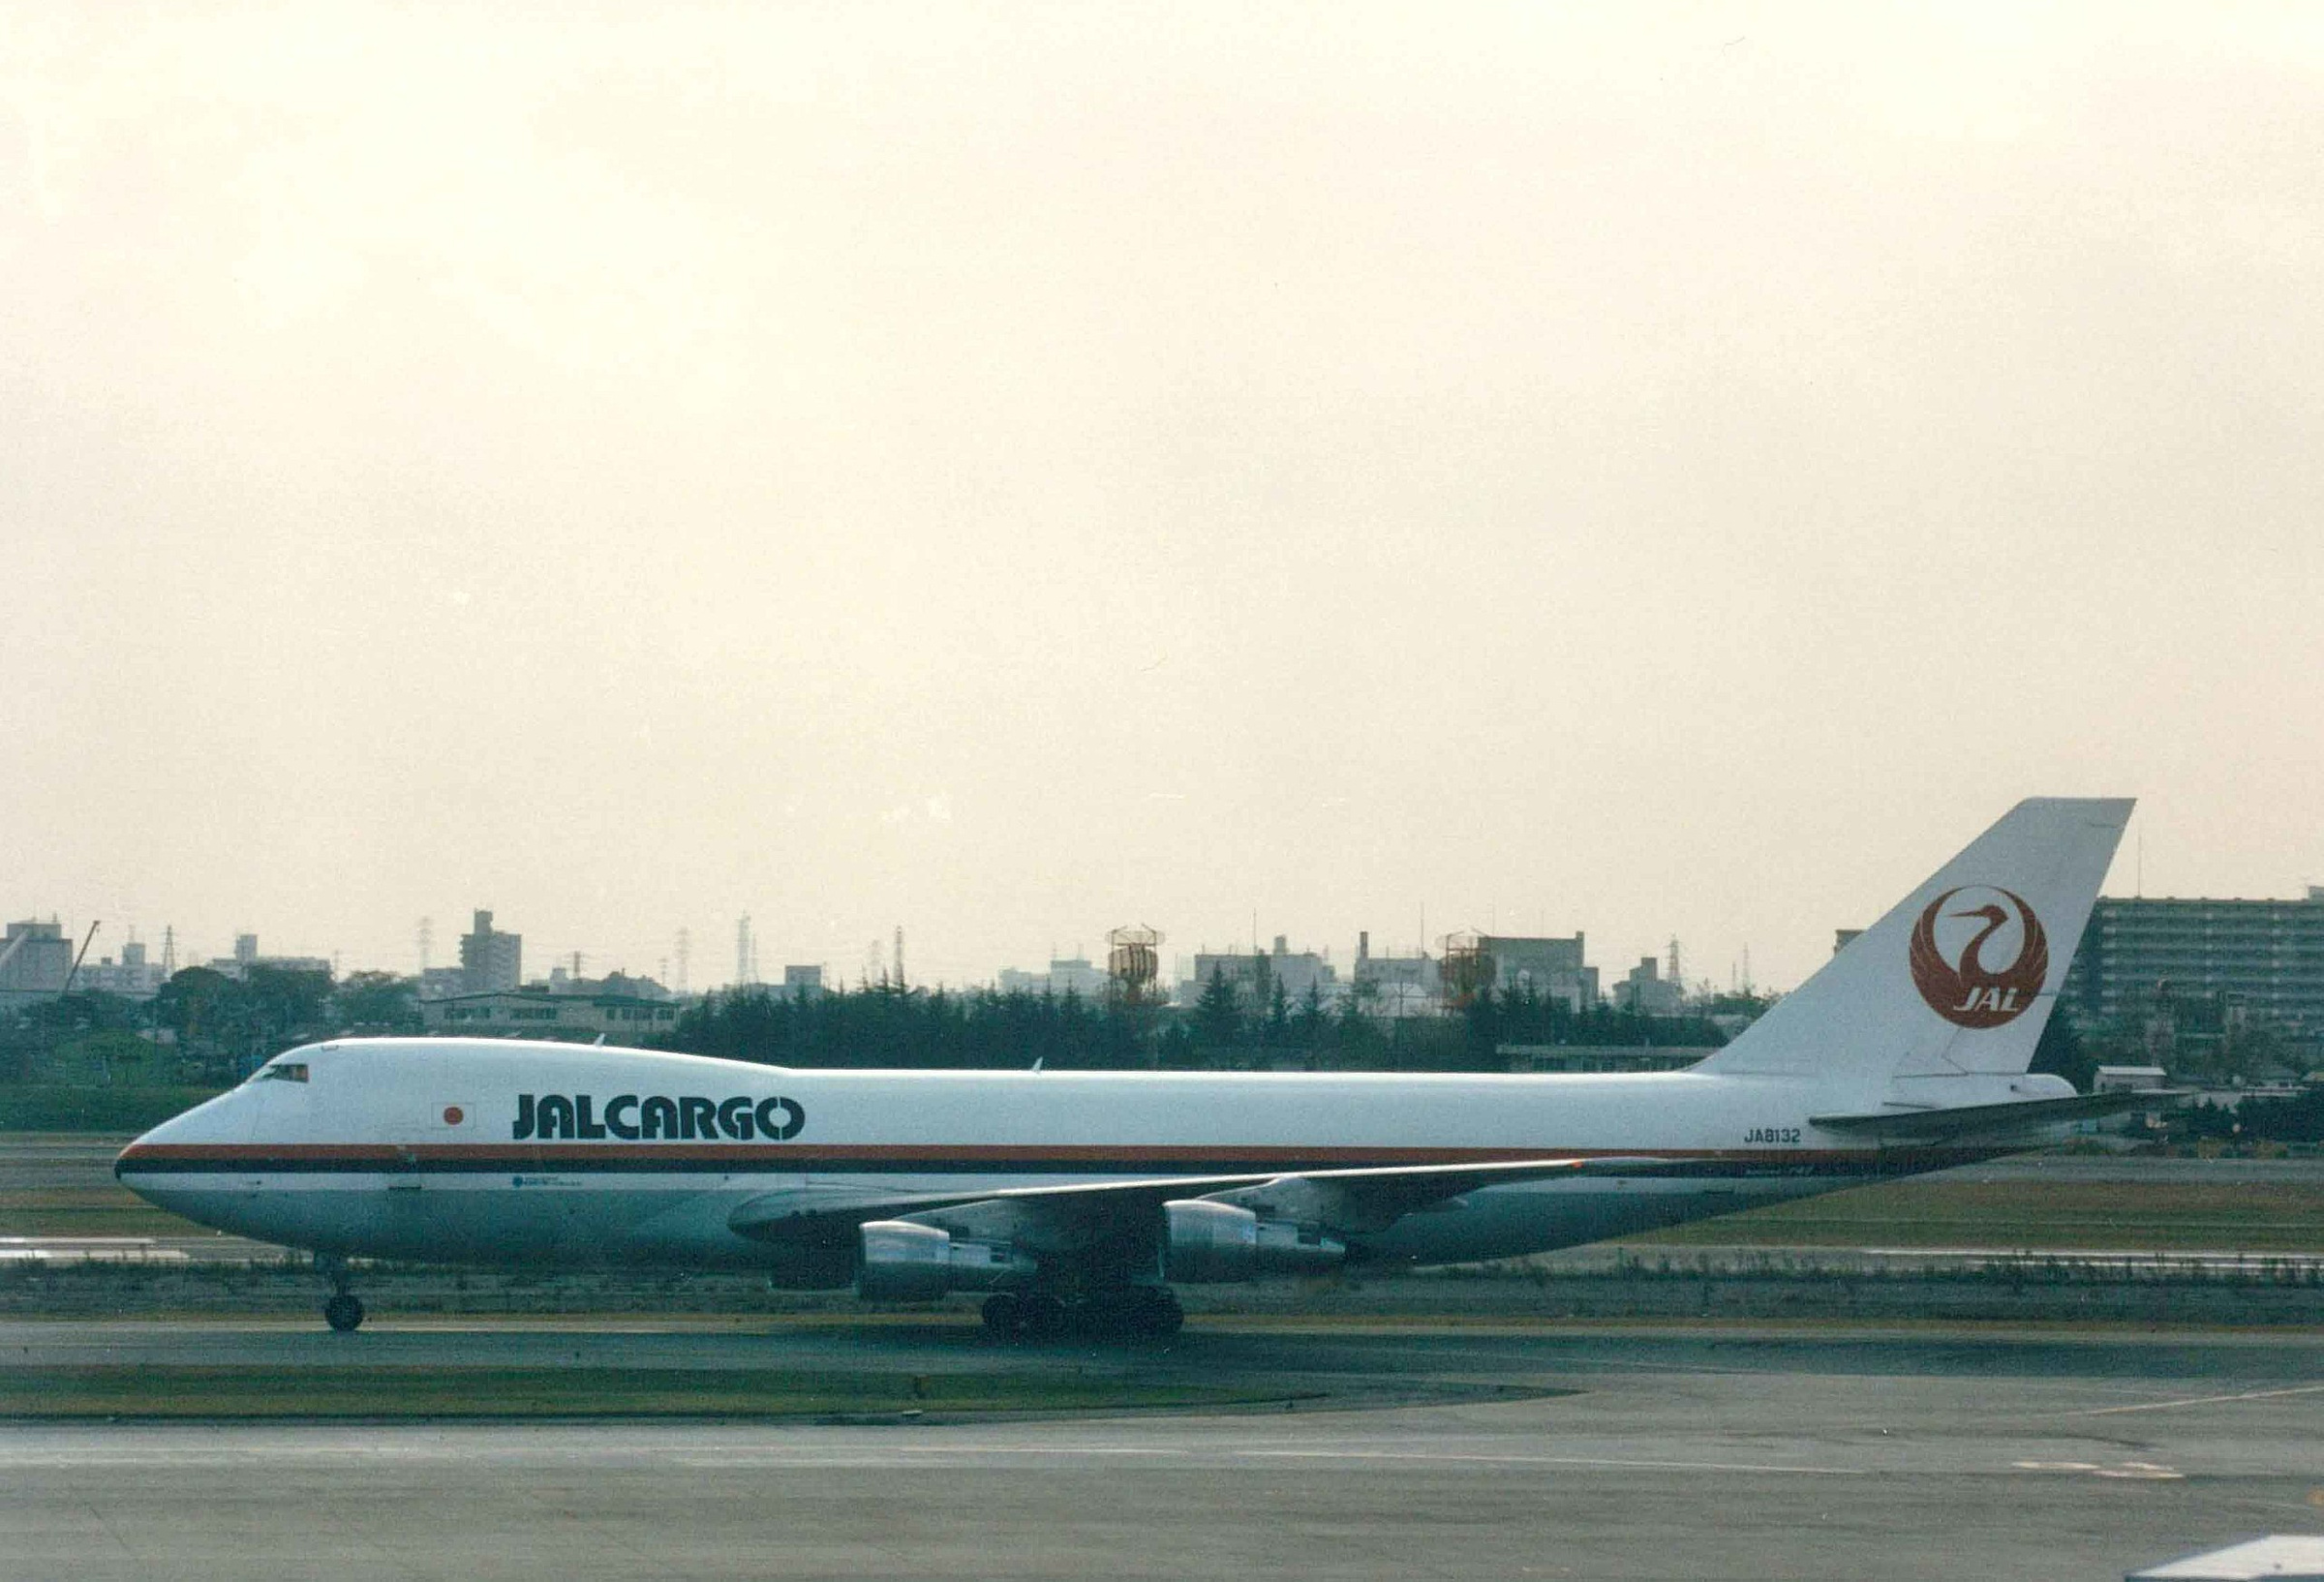 Boeing 747-246F авиакомпании JAL Cargo, аналогичный выполнявшему рейс 1628. Фото © Wikipedia